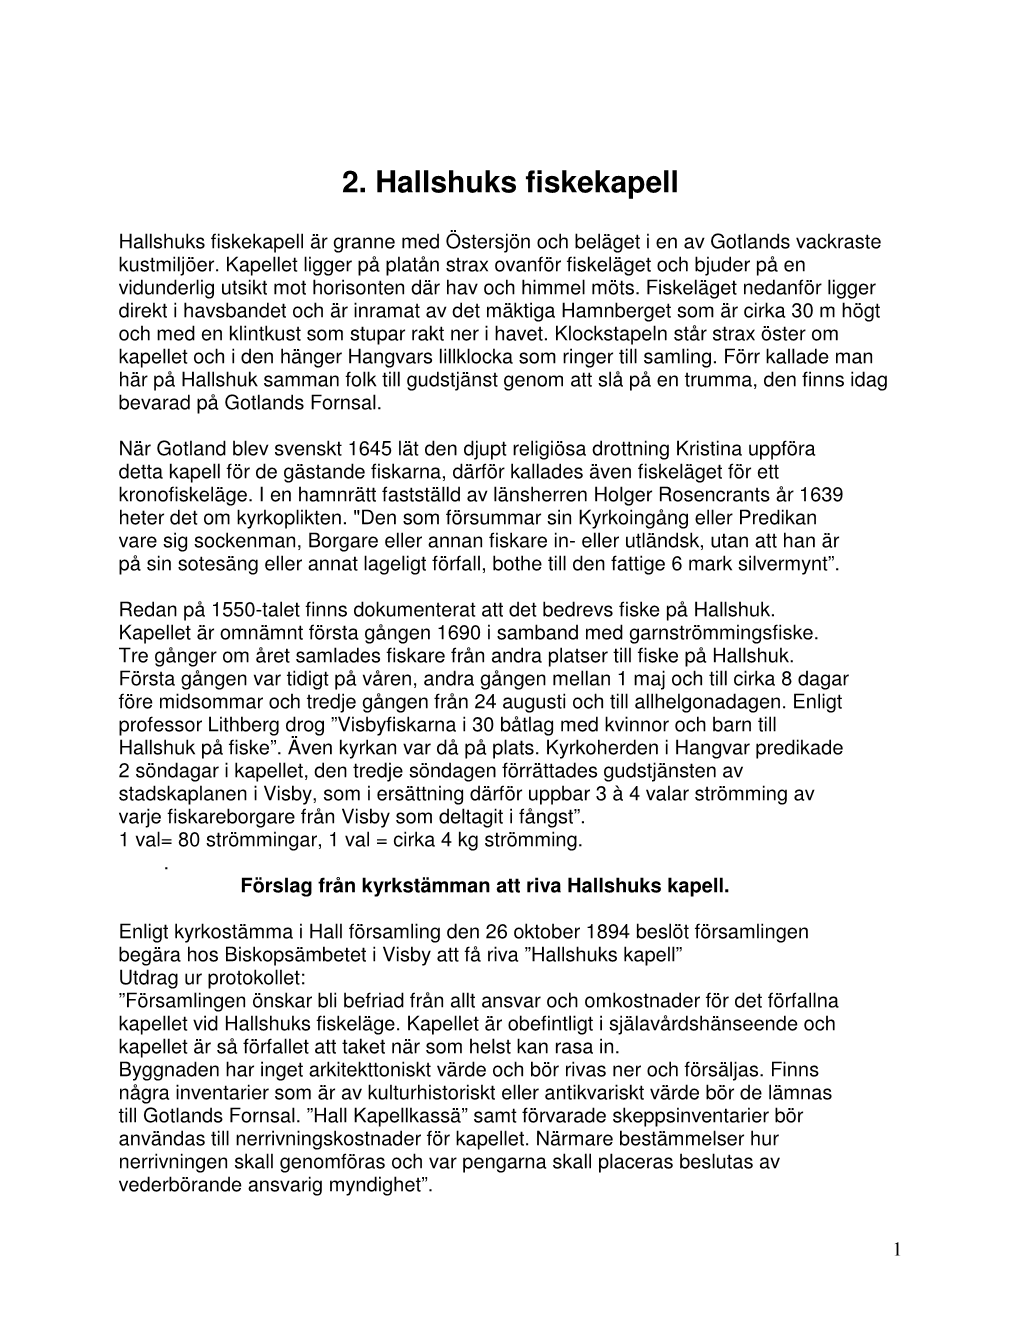 2. Hallshuks Fiskekapell